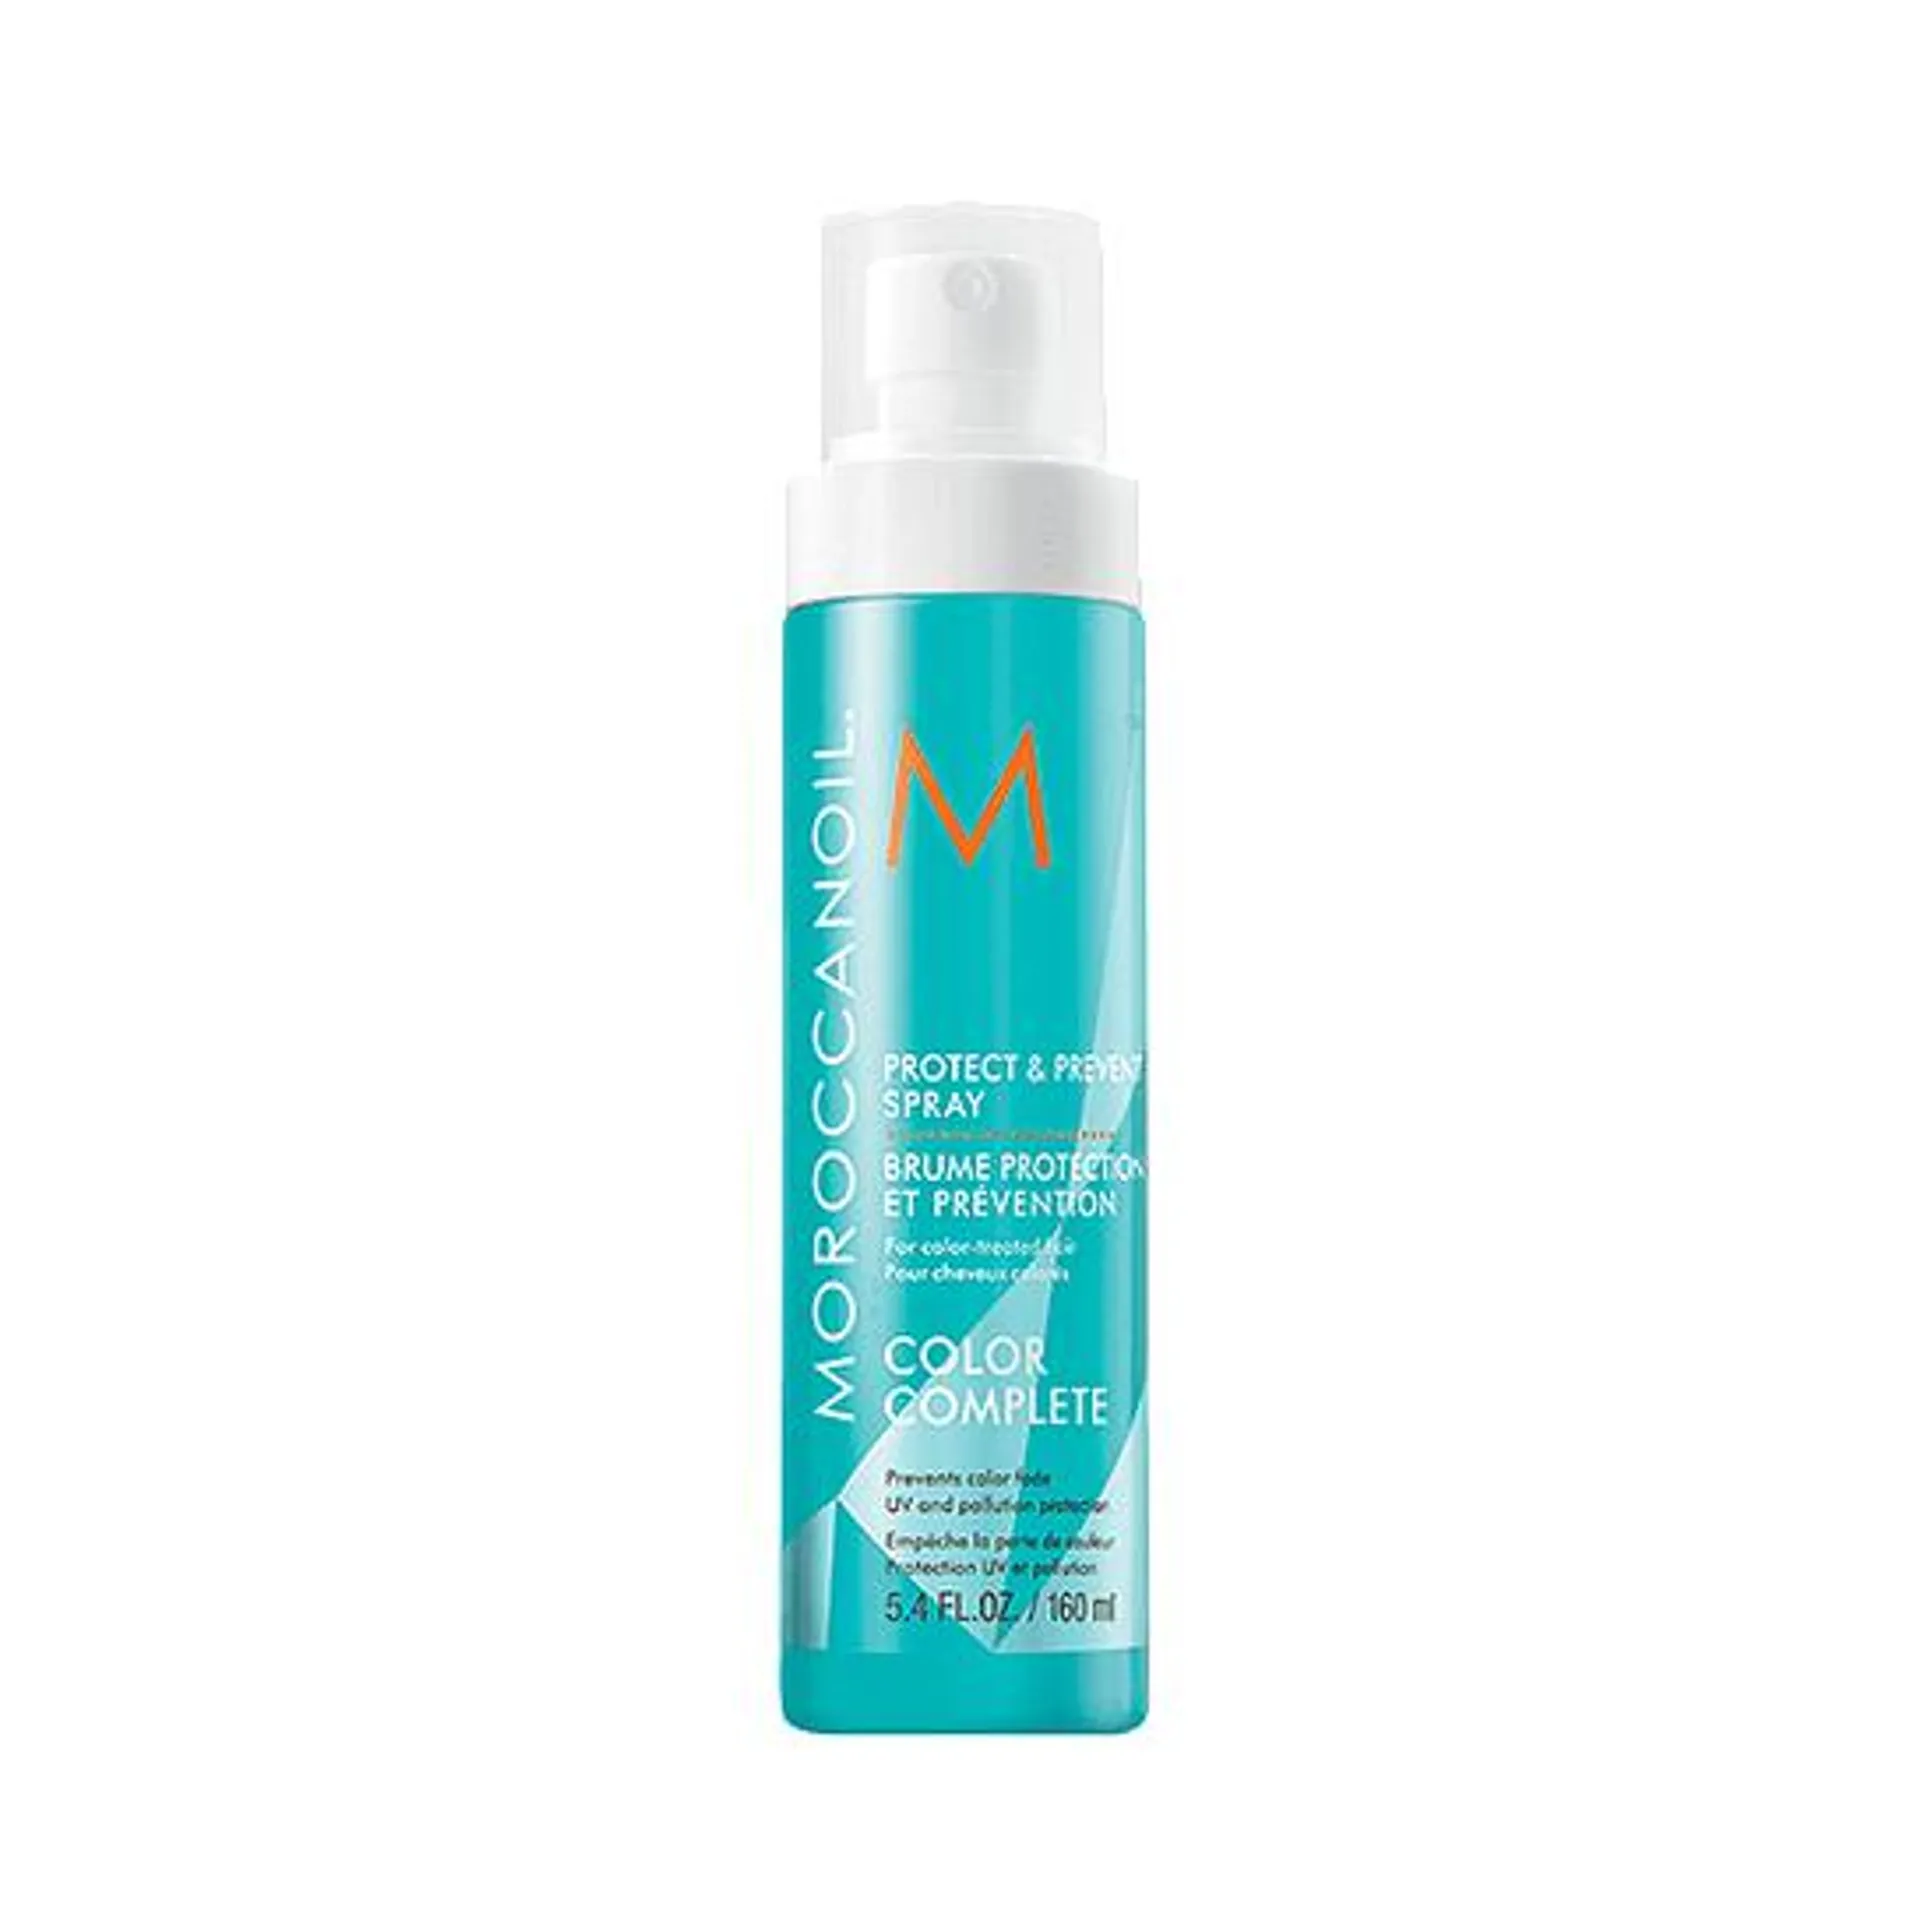 Spray Protección y Prevención Moroccanoil 160ml